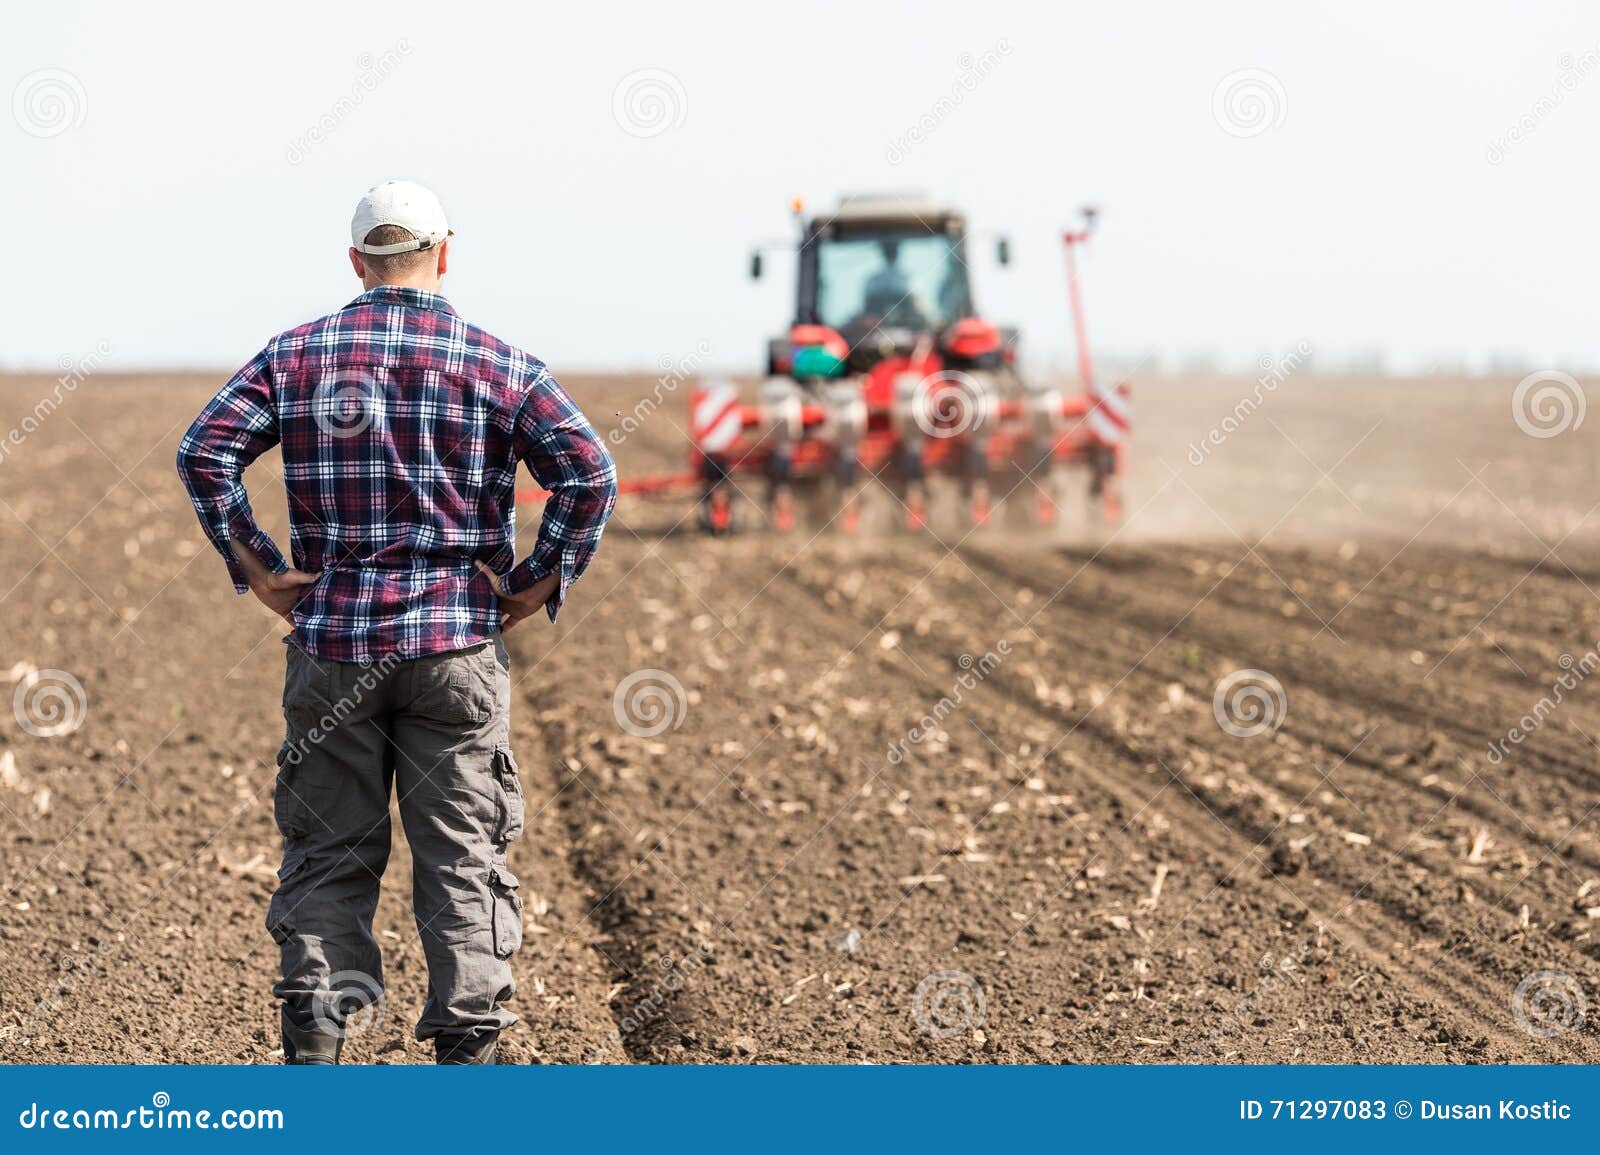 young farmer on farmland